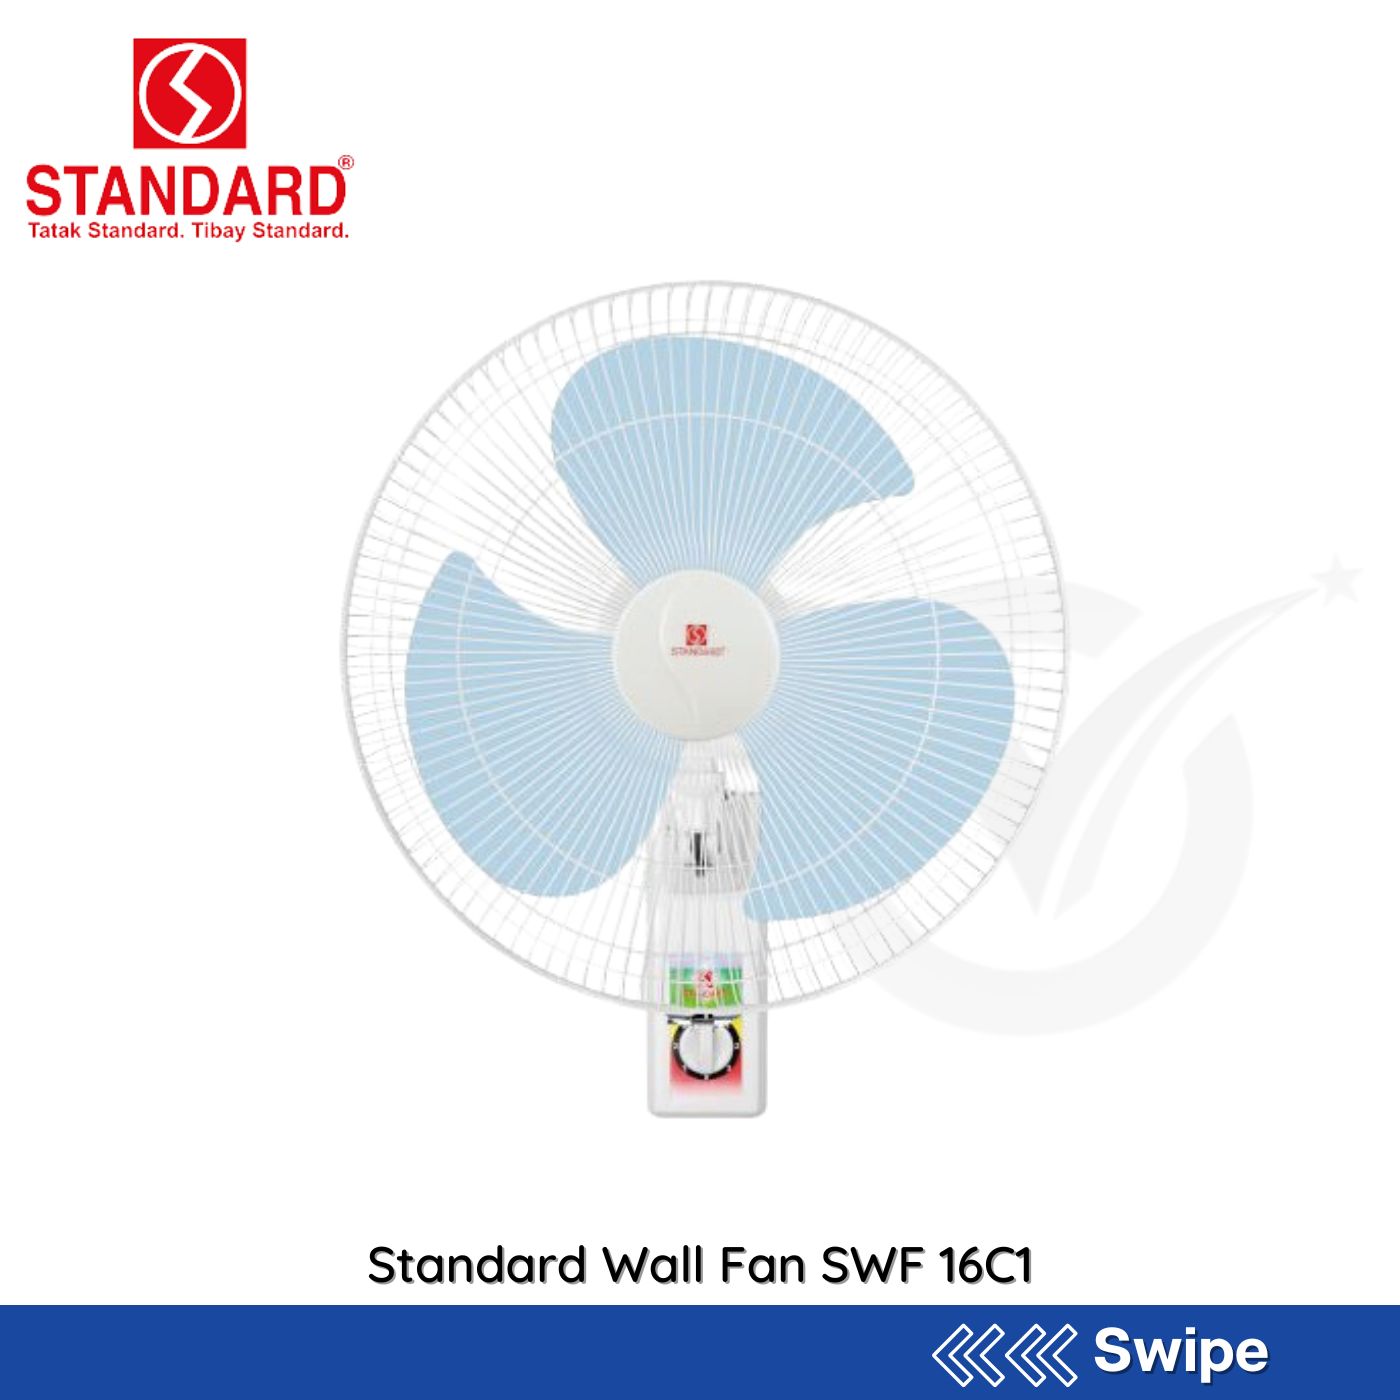 Standard Wall Fan SWF 16C1